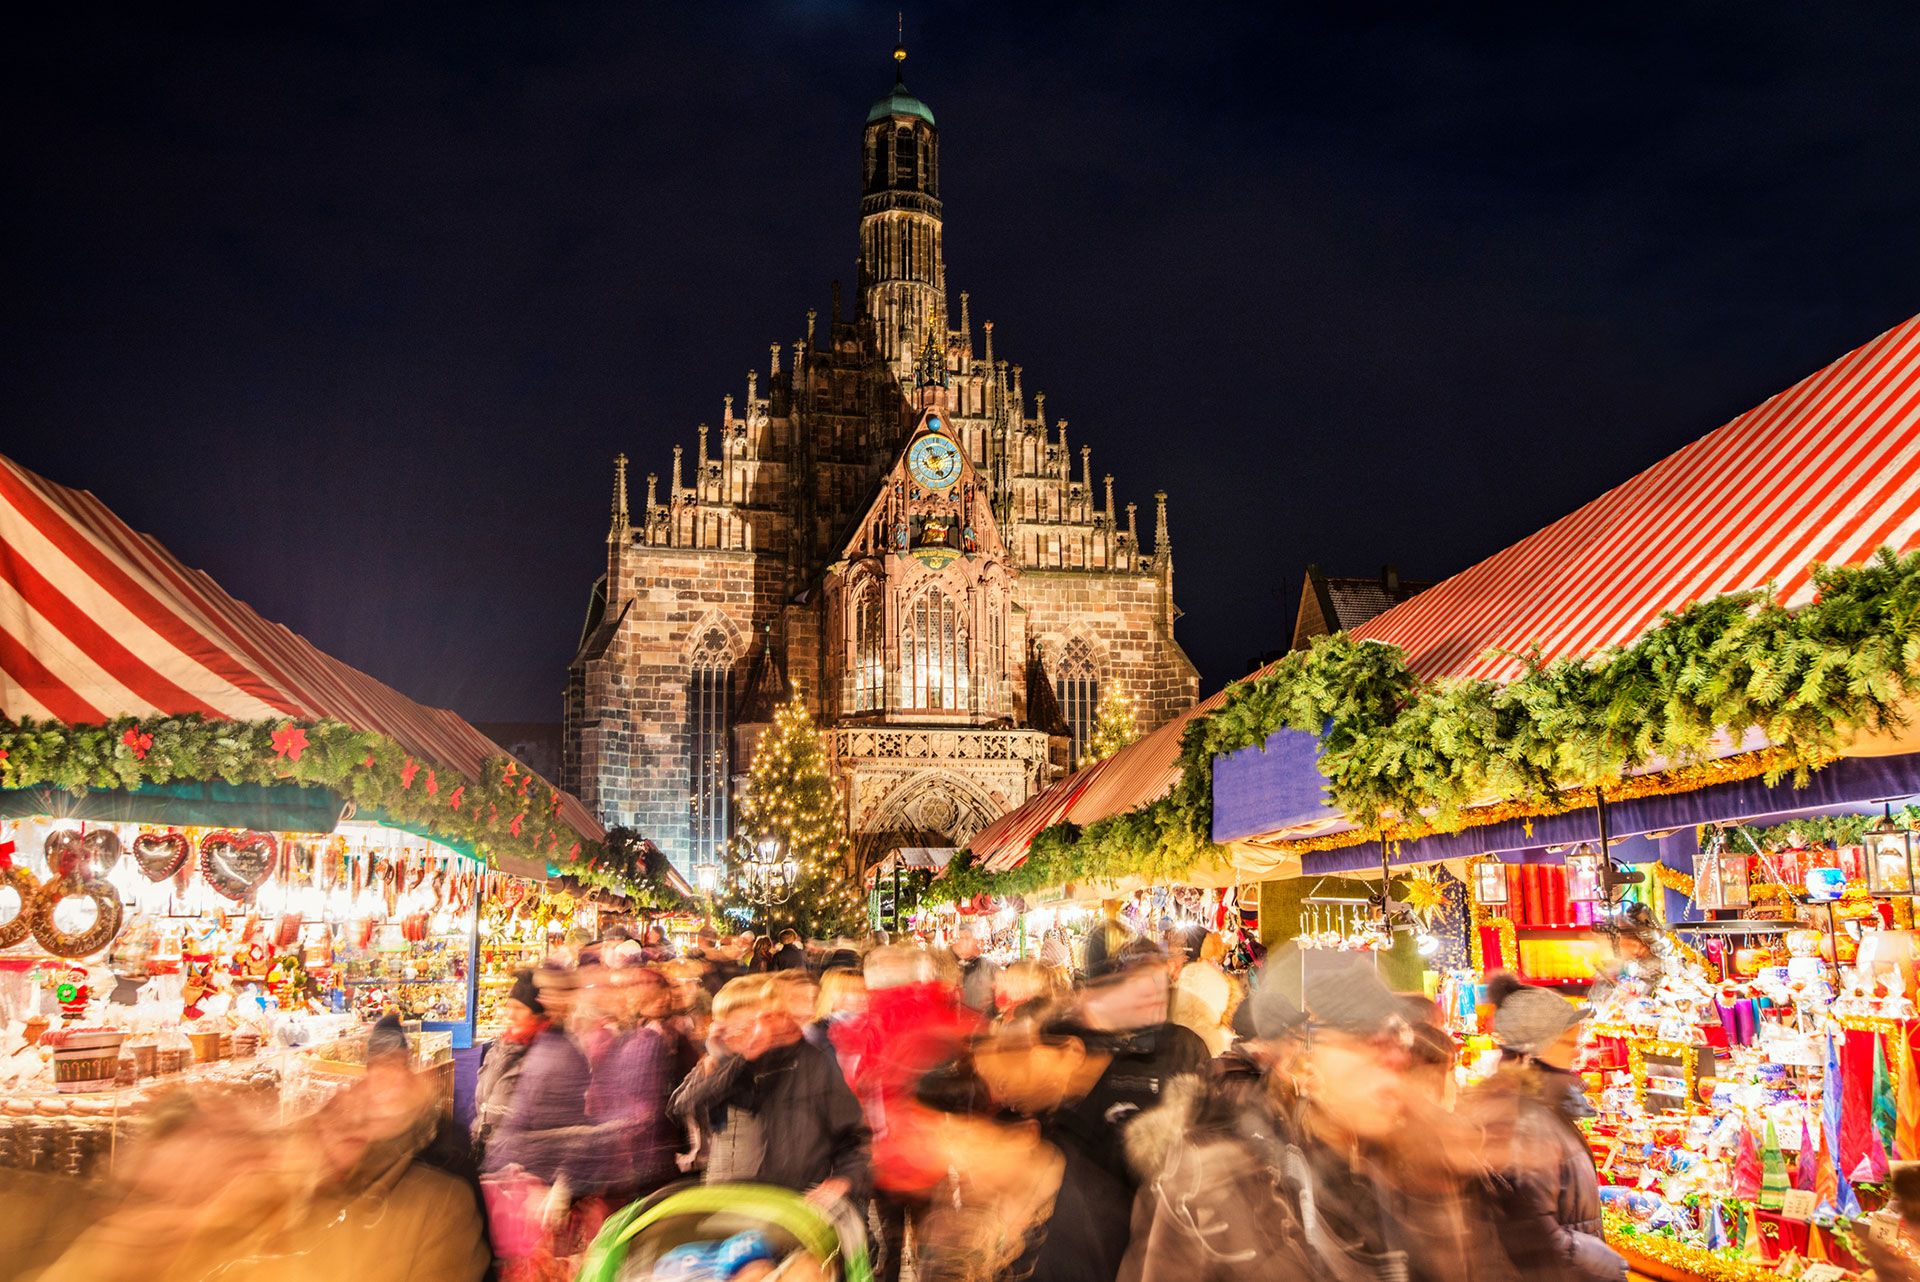 El mercado de Navidad de Núremberg comienza a finales de noviembre y continúa todo diciembre